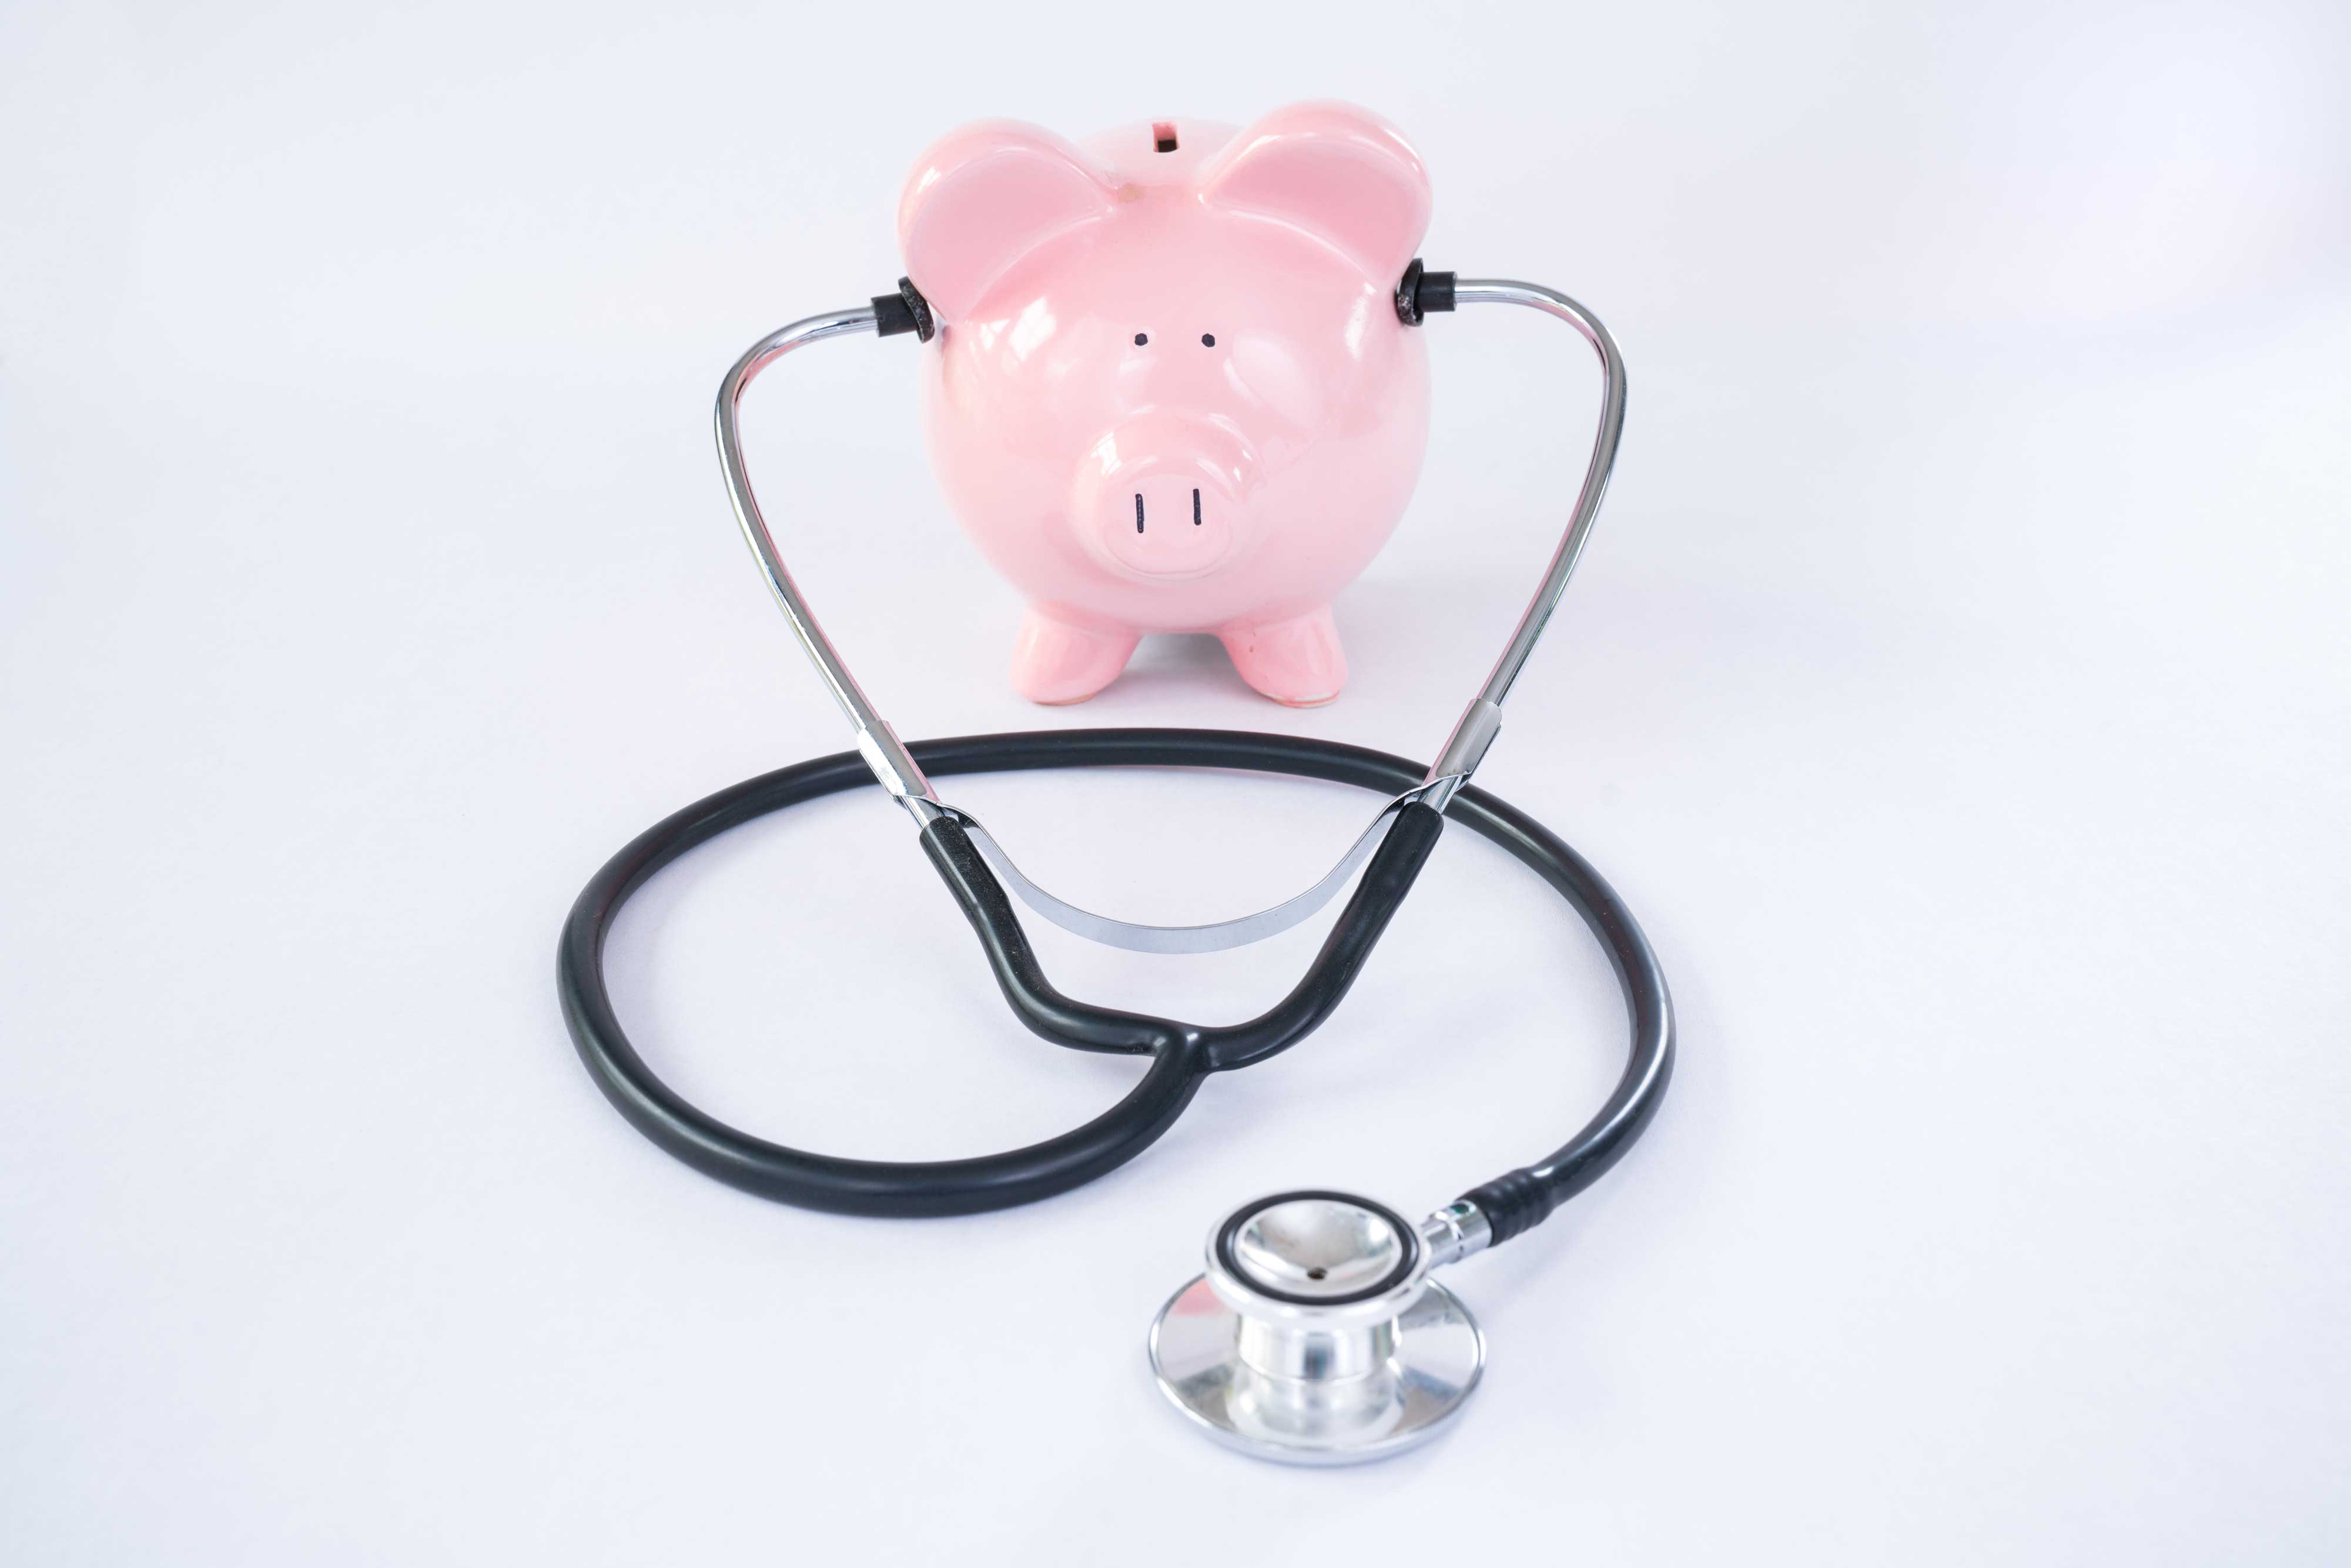 Kosten im Gesundheitswesen unter besonderer Beobachtung